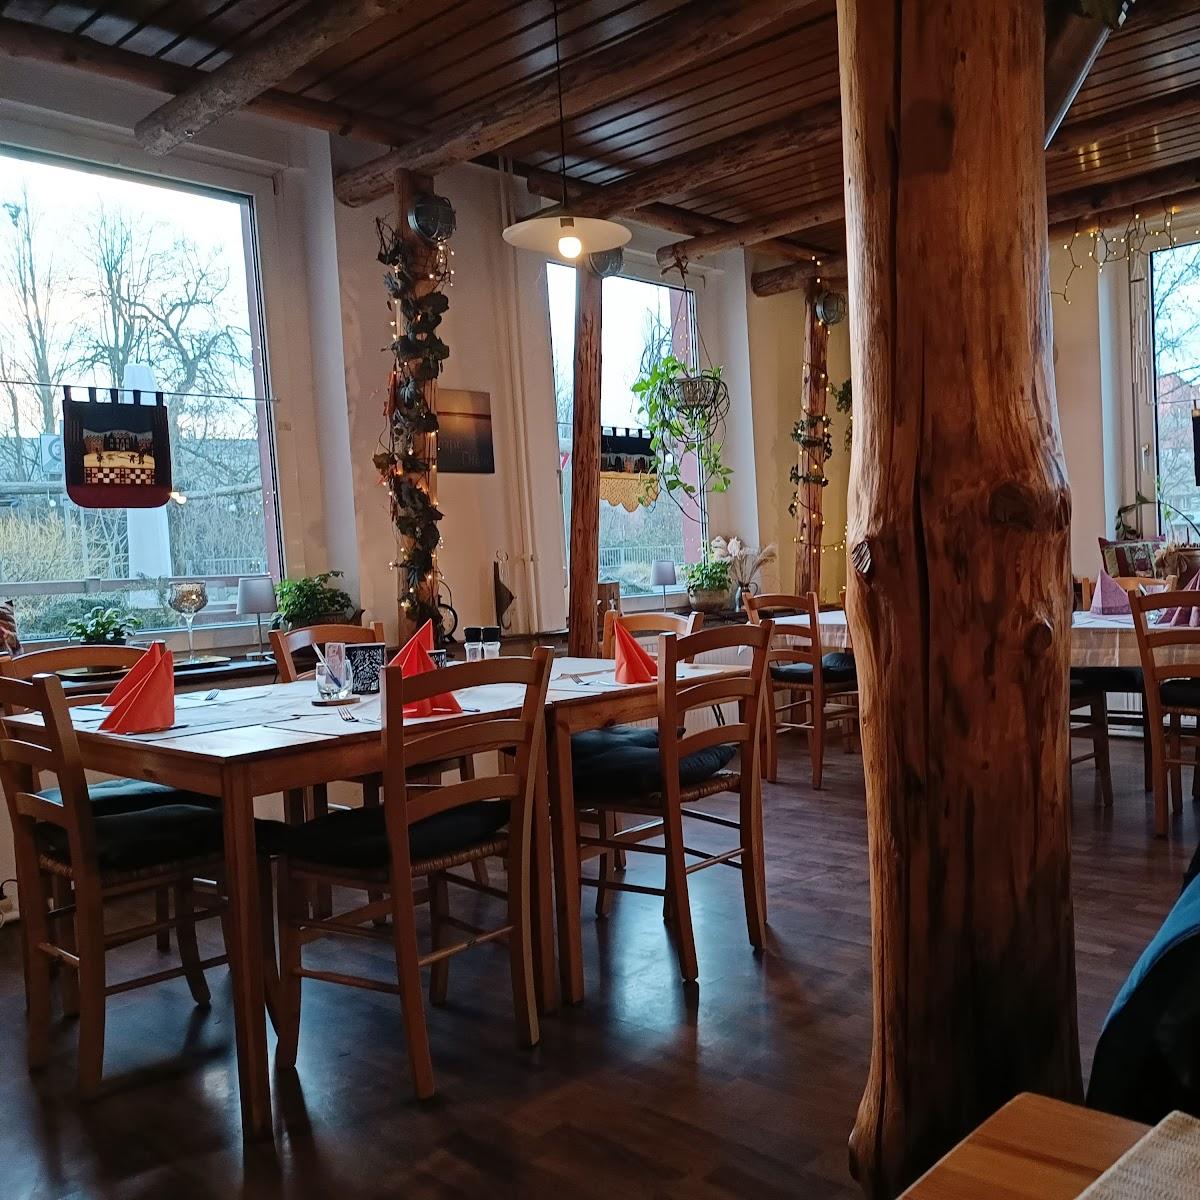 Restaurant "Zum Schützenhaus" in Ronneburg